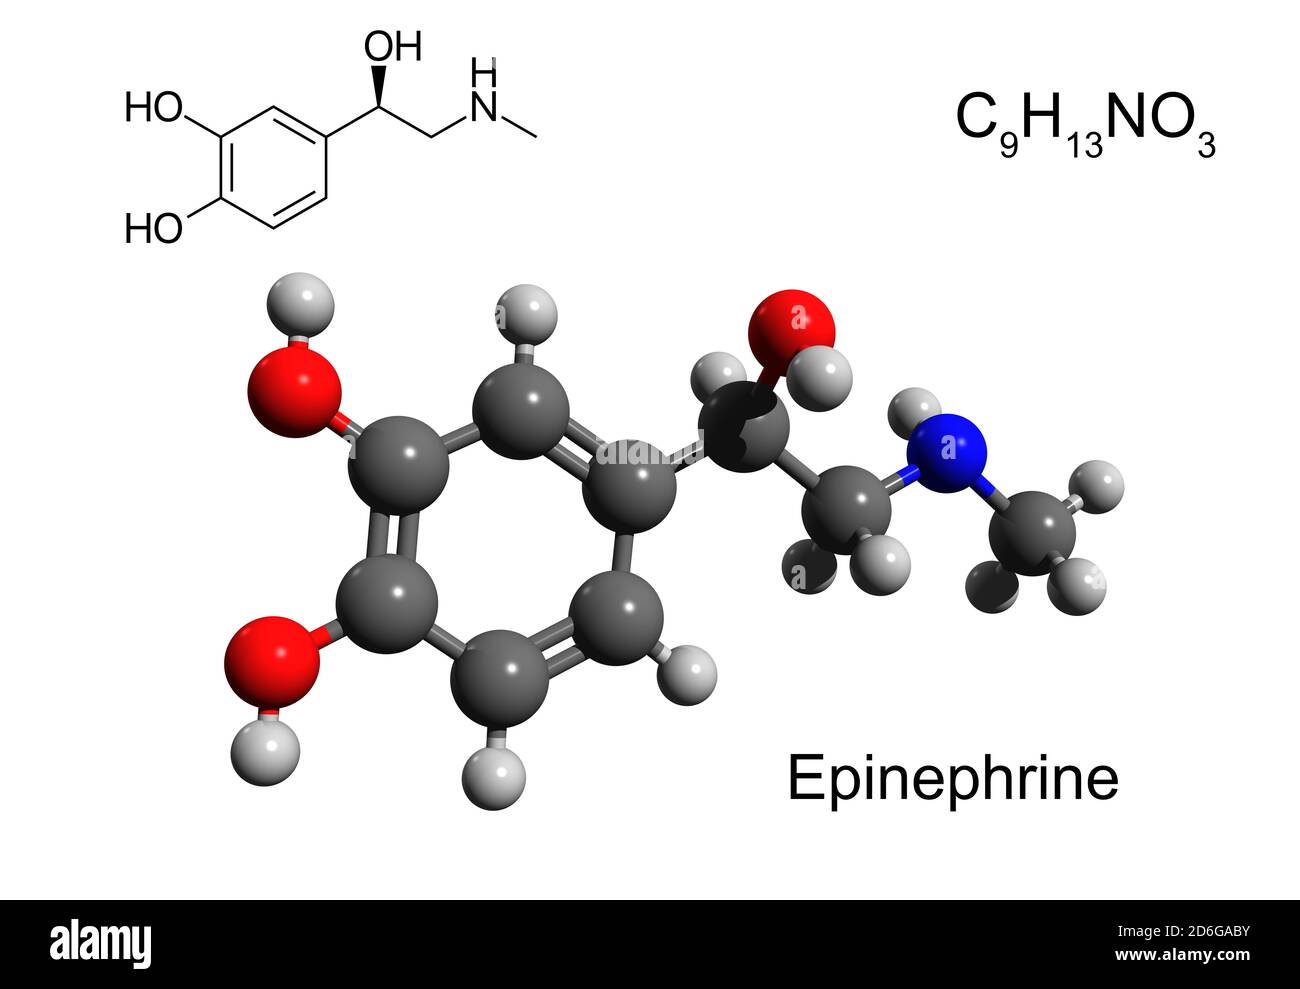 Formule chimique, formule structurale et modèle boule-et-bâton 3D d'une hormone et neurotransmetteur épinéphrine (adrénaline), fond blanc Banque D'Images